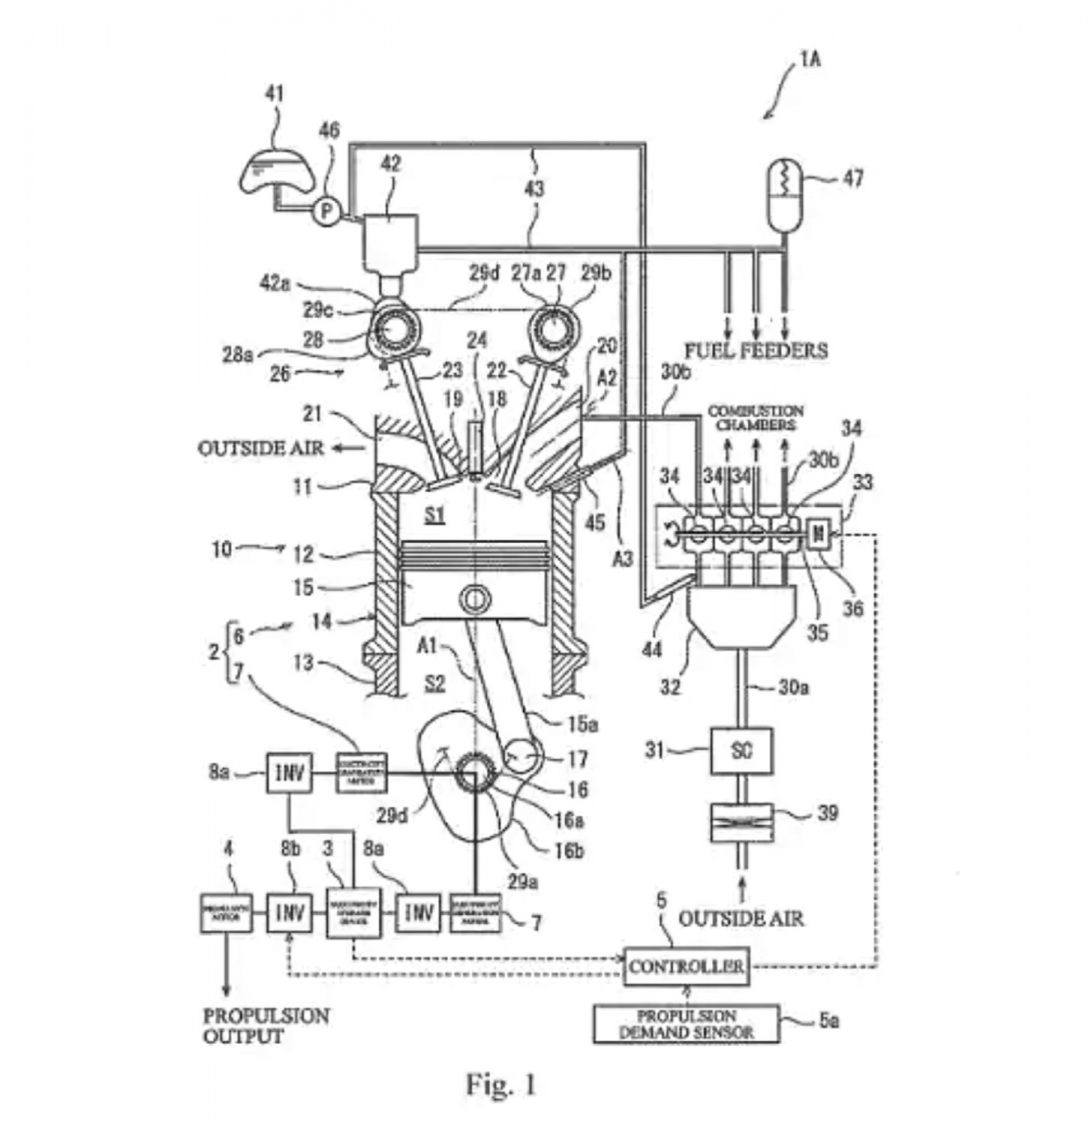 Kawasaki supercharged engine patent